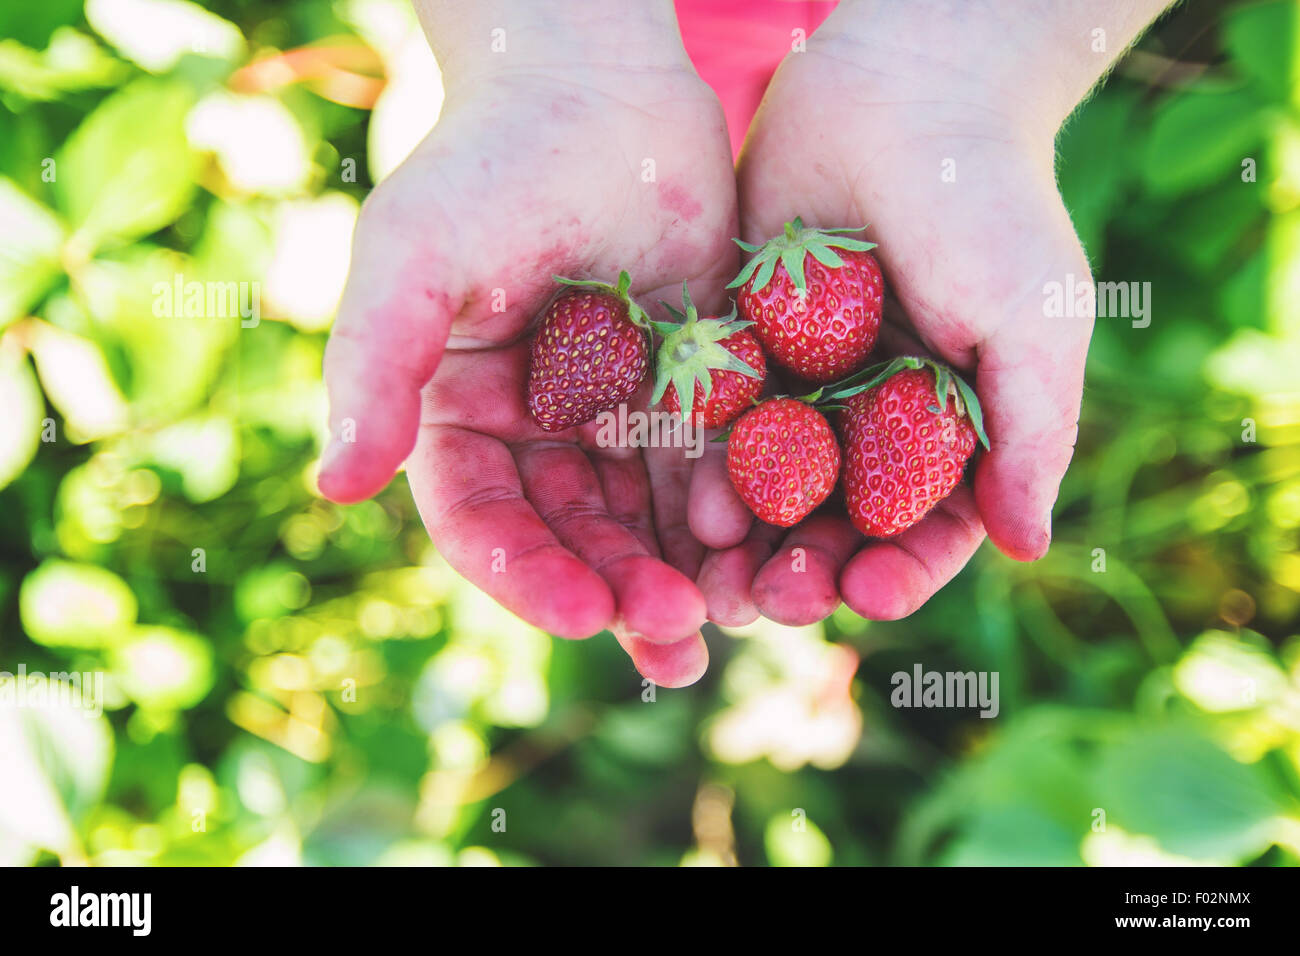 Primo piano di mani macchiate di un ragazzo che tengono fragole appena raccolte, USA Foto Stock